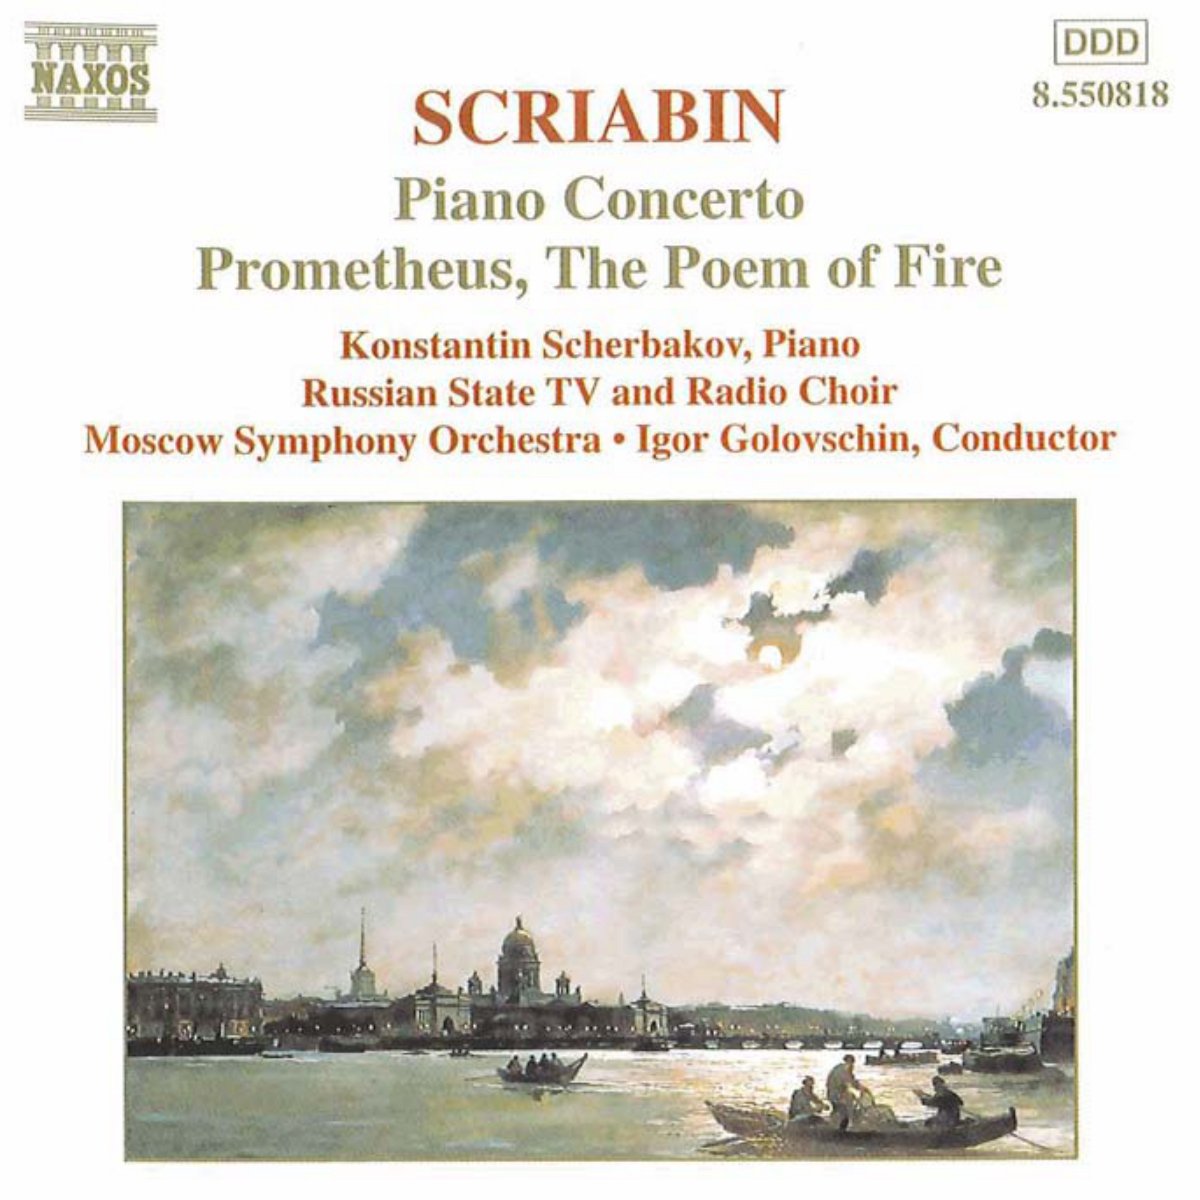 SCRIABIN: Piano Concerto